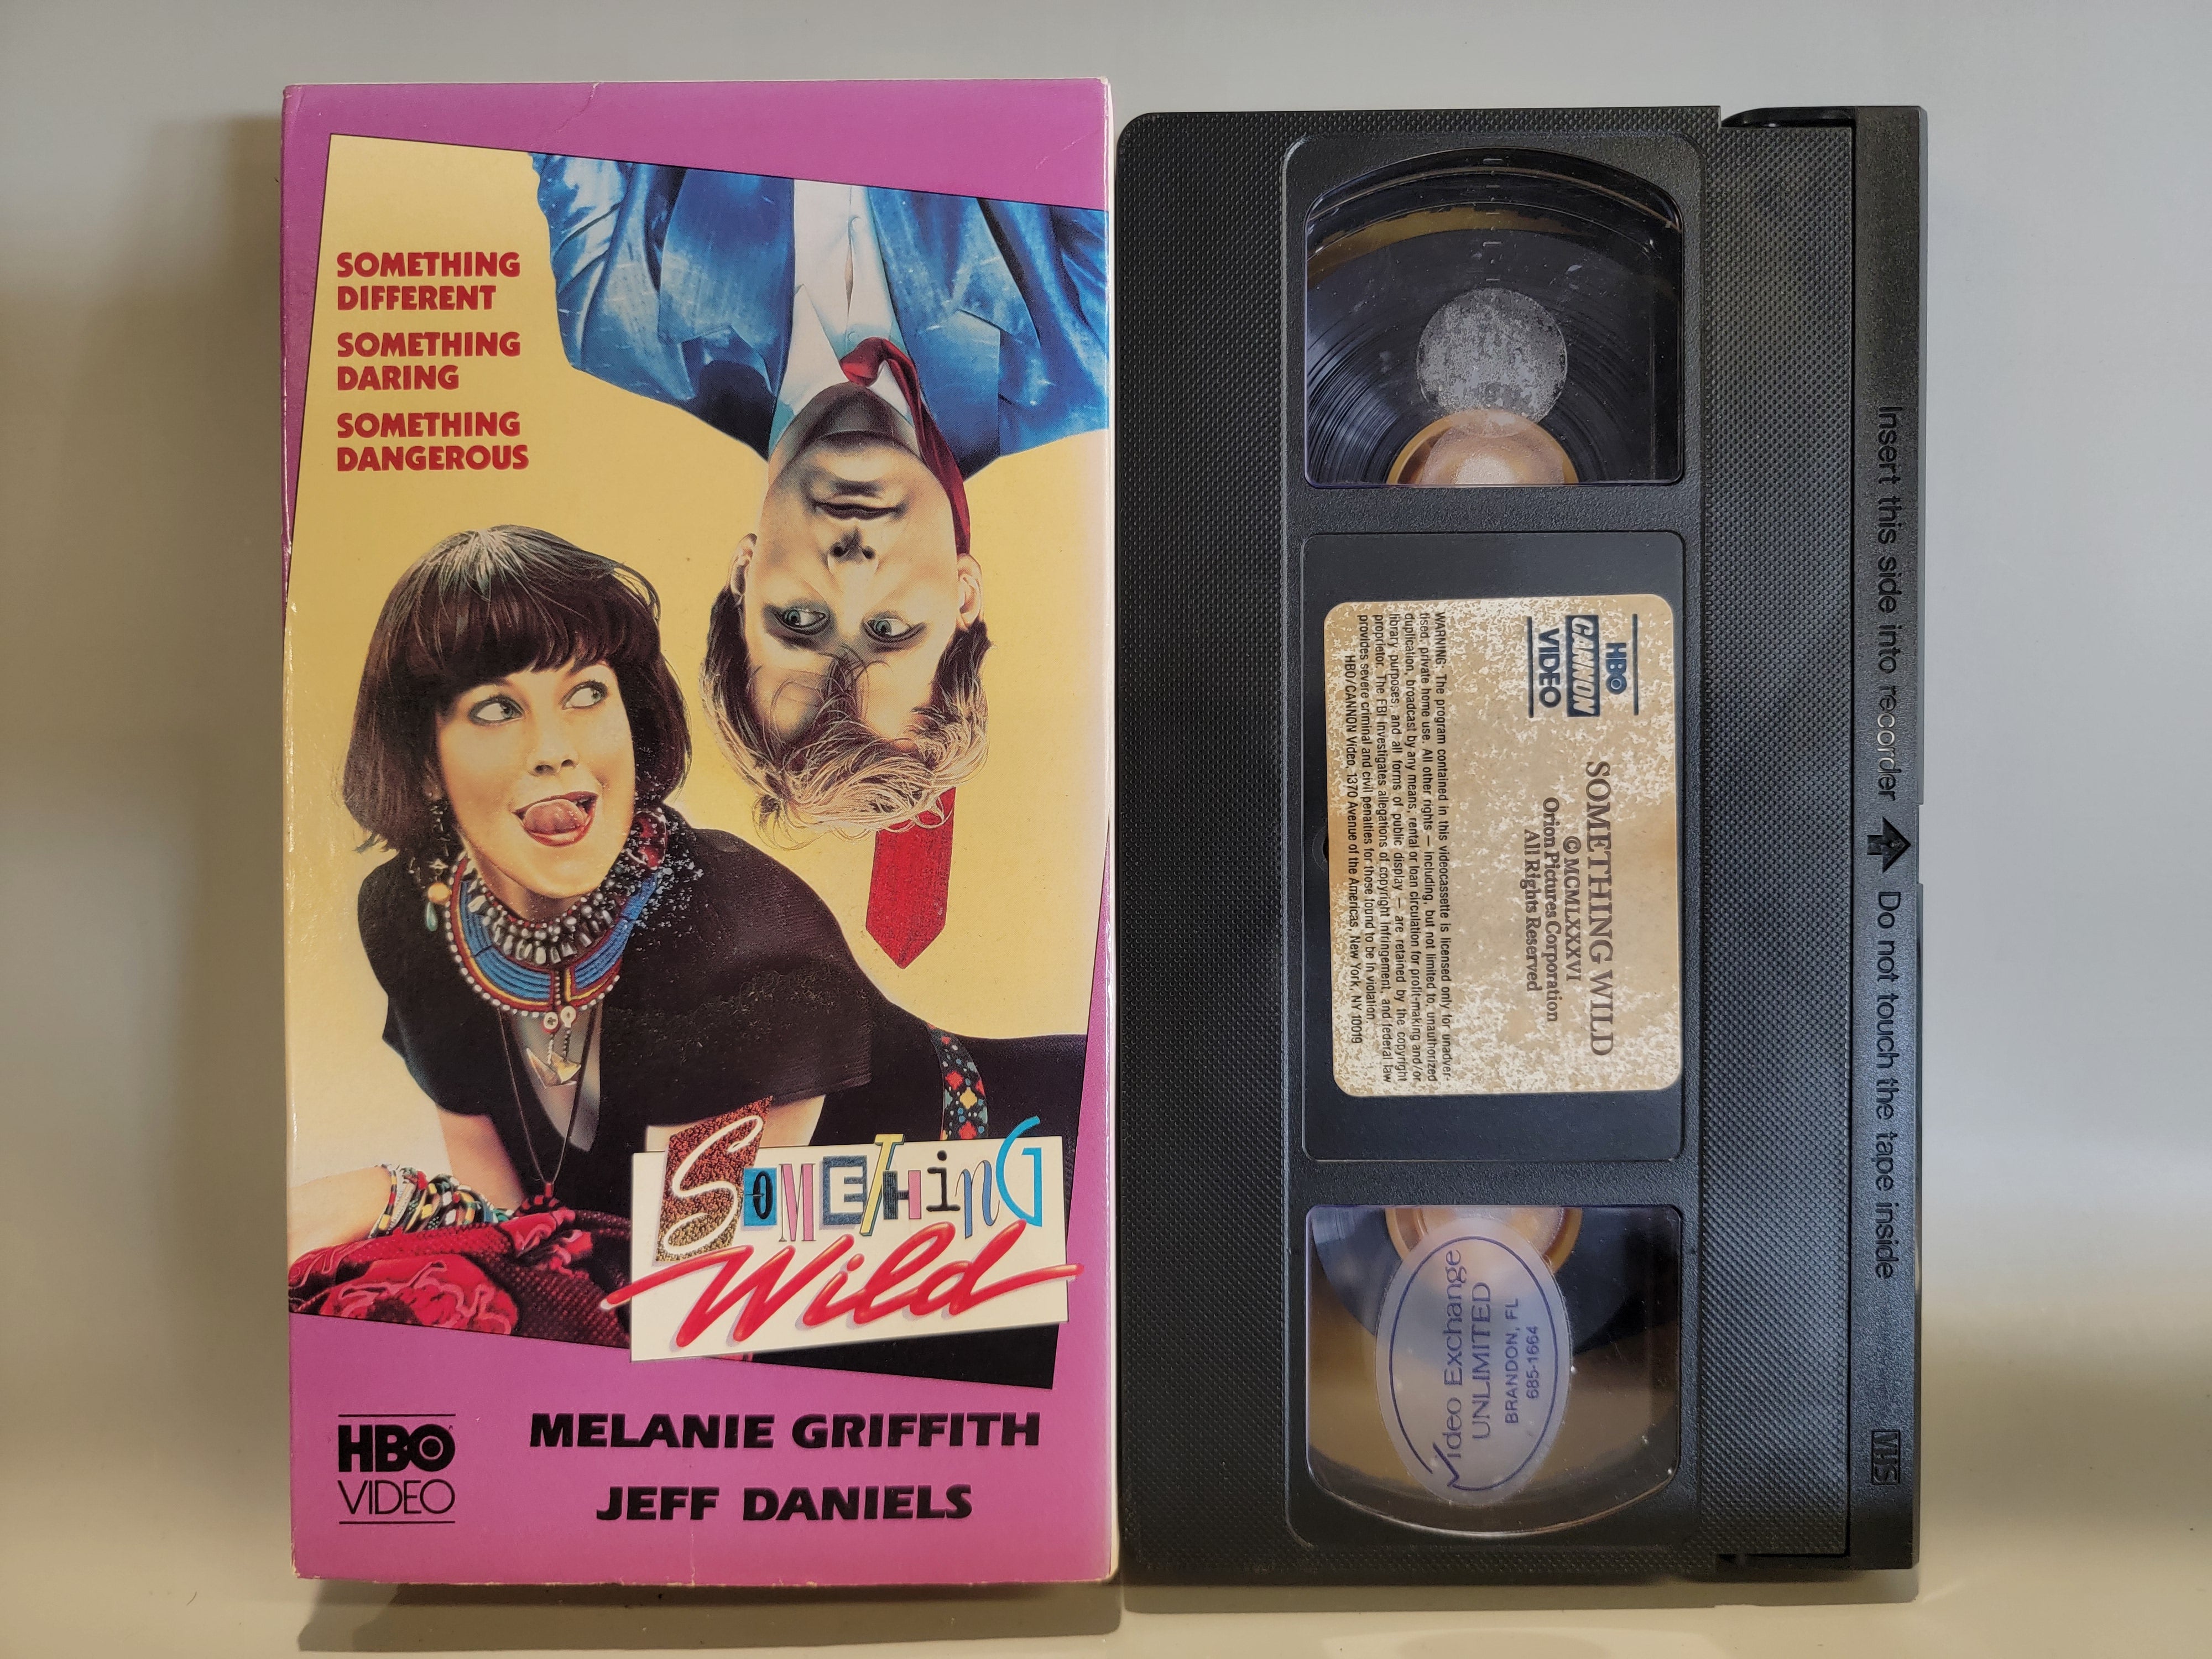 SOMETHING WILD VHS [USED]